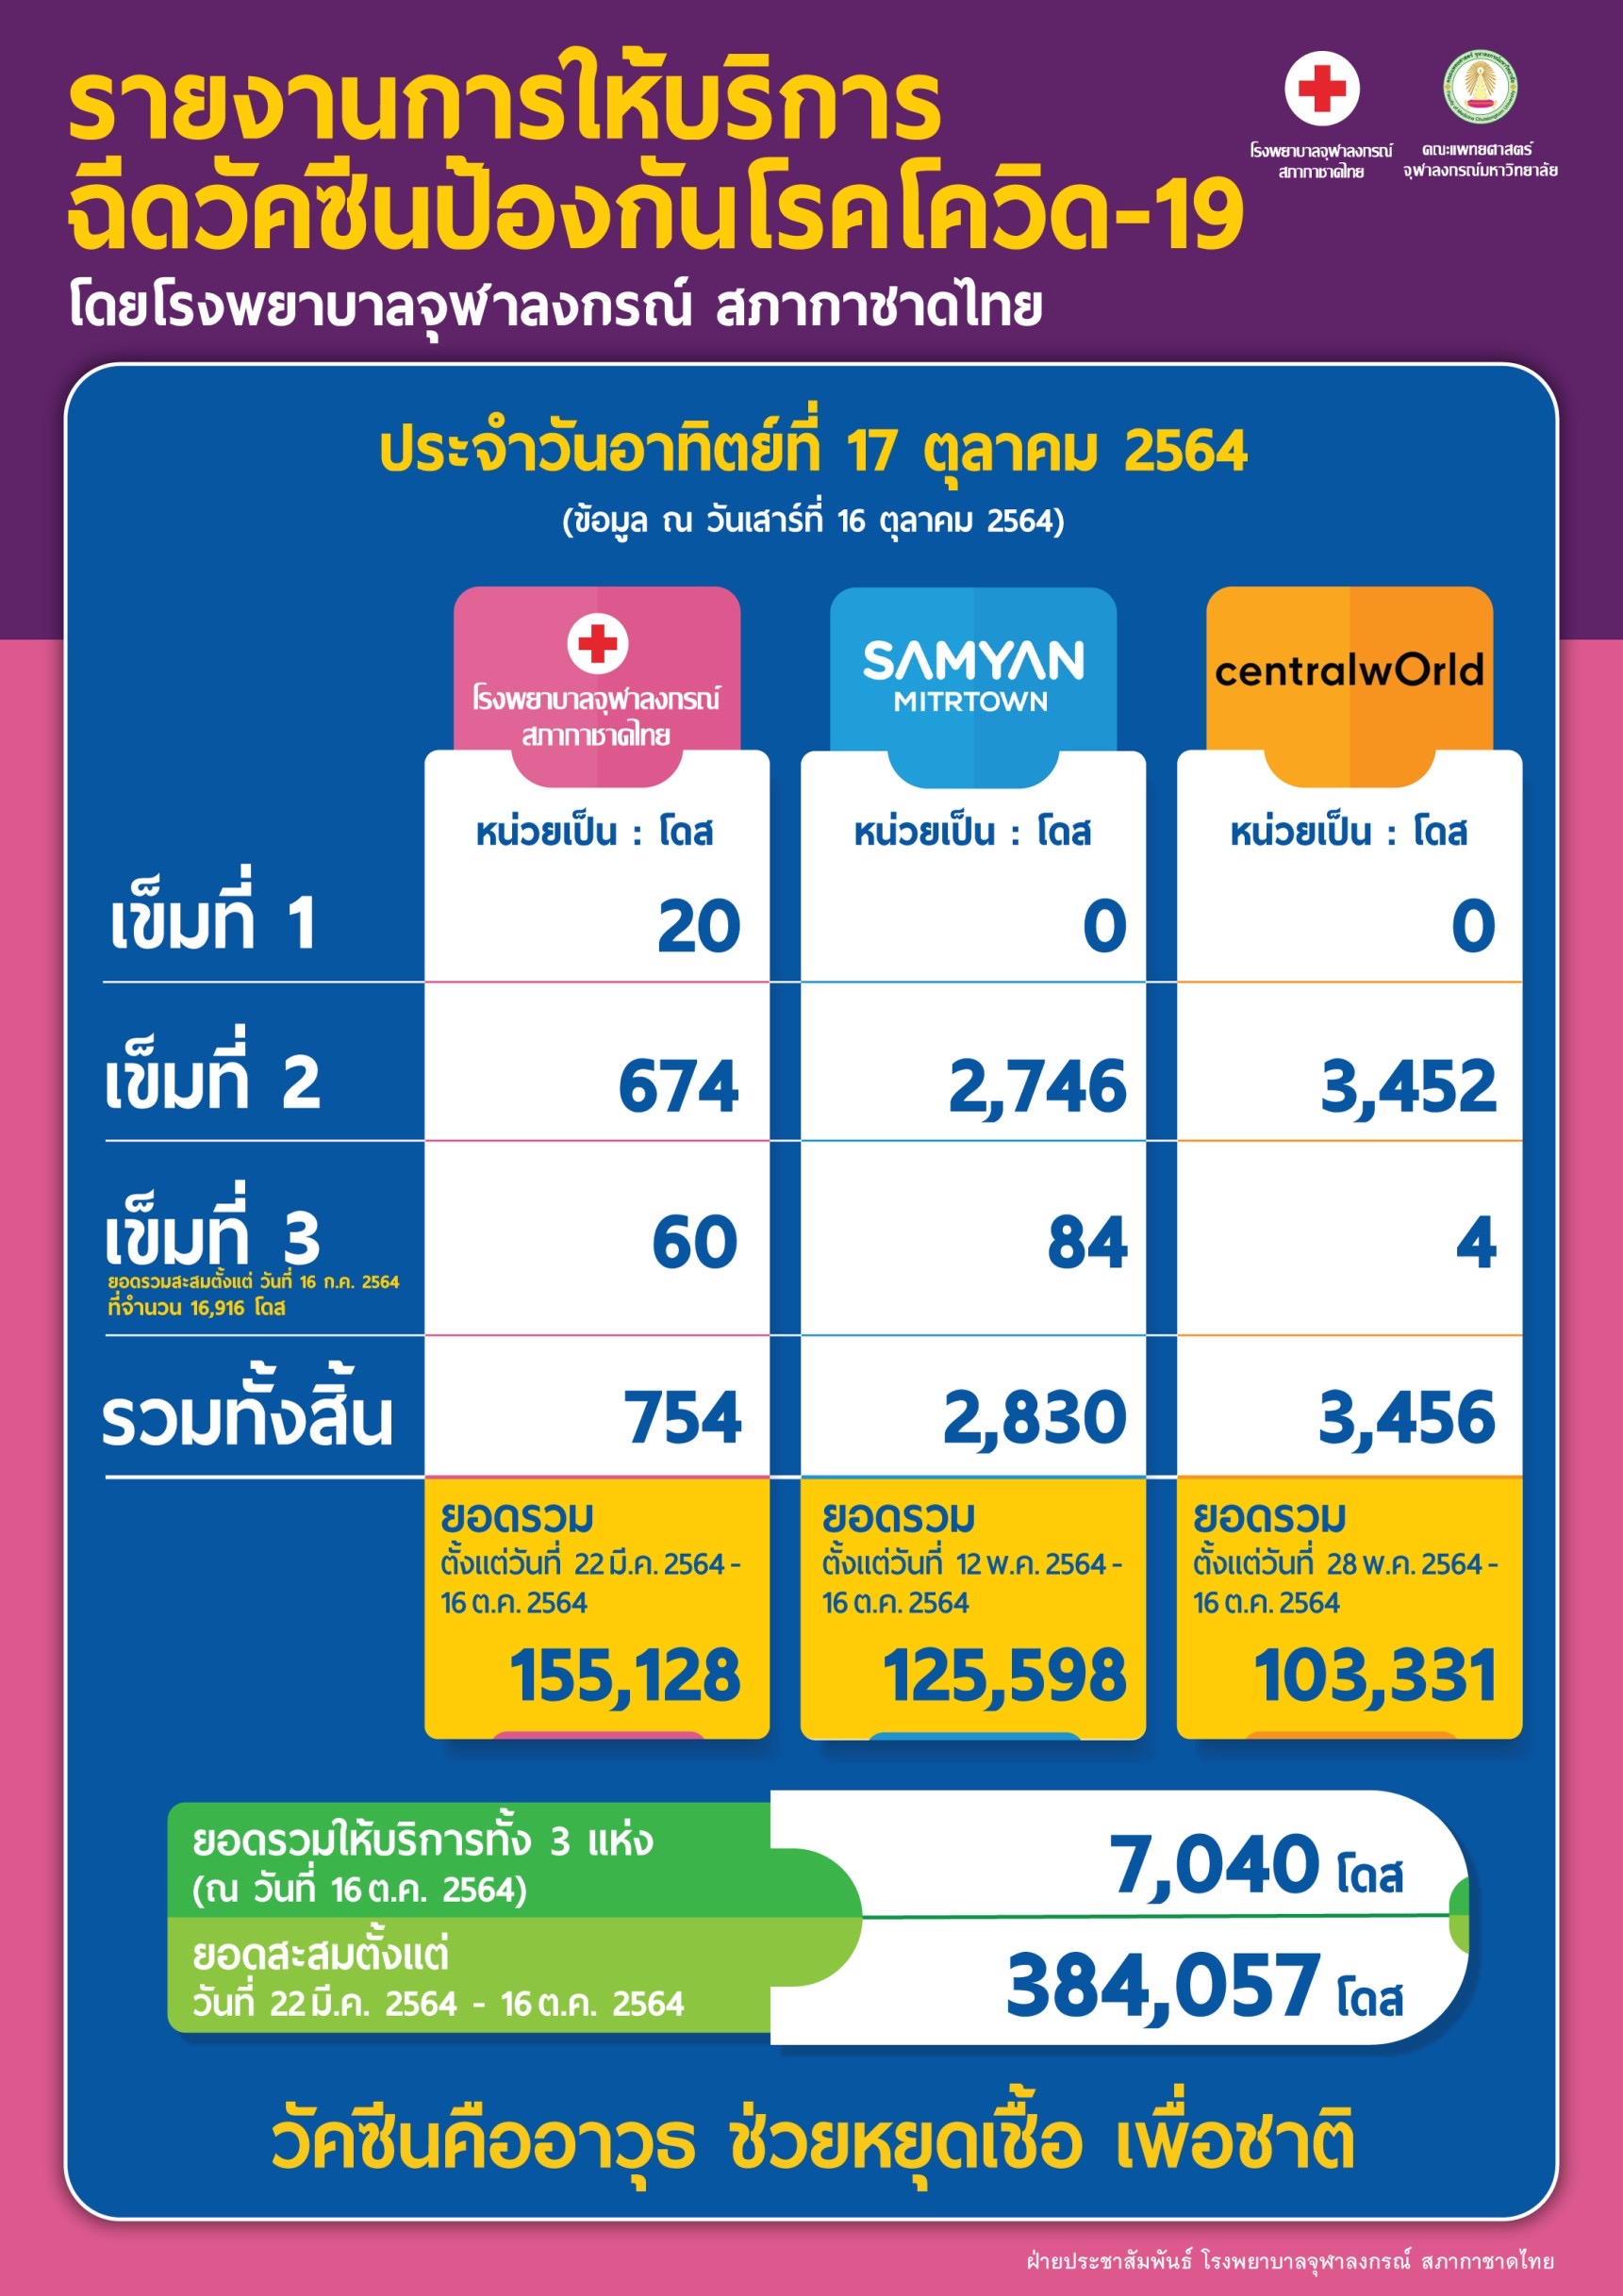 รายงานการให้บริการฉีดวัคซีนป้องกันโรคโควิด-19 โดยโรงพยาบาลจุฬาลงกรณ์ สภากาชาดไทย ประจำวันอาทิตย์ที่ 17 ตุลาคม 2564